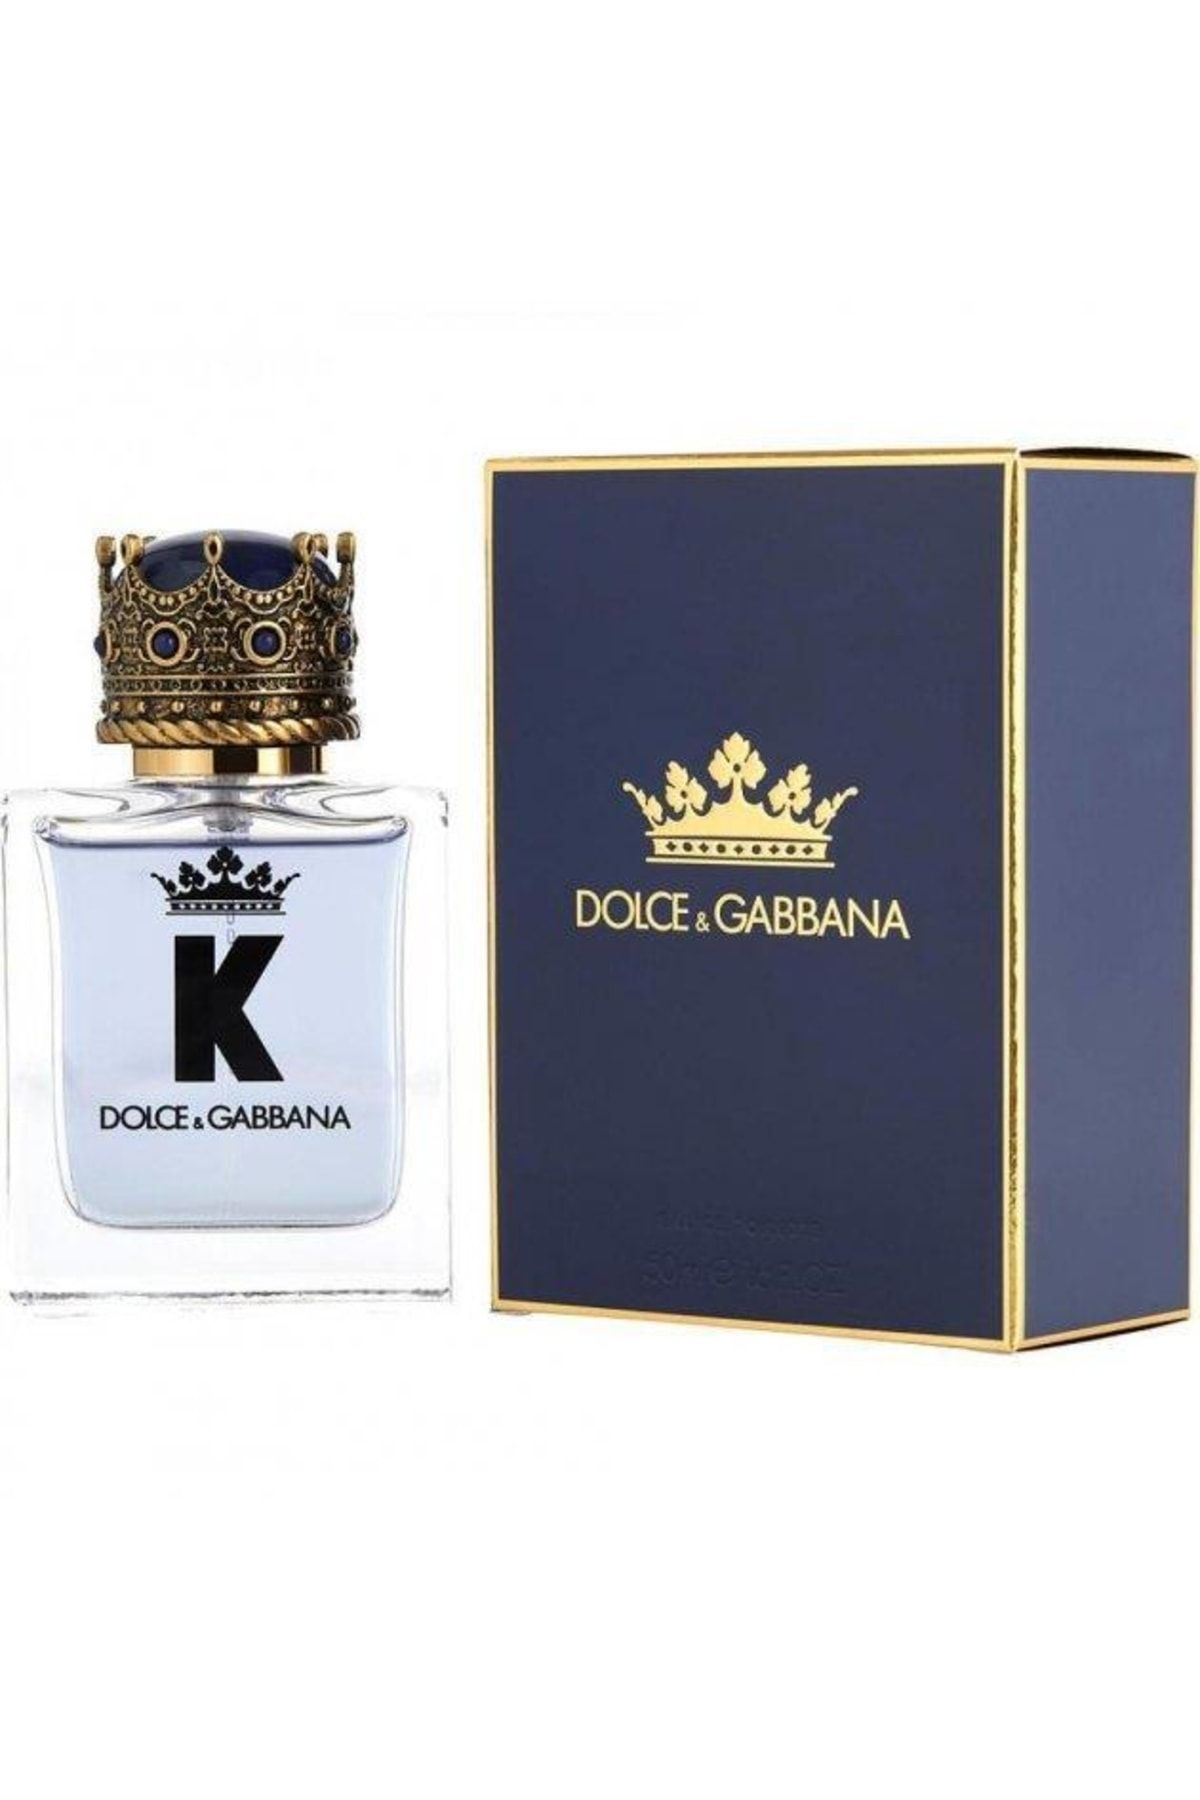 Dolce gabbana вода k. Dolce & Gabbana k for men 100 мл. Dolce Gabbana King 100ml. Dolce and Gabbana King 50 ml. Dolce&Gabbana King туалетная вода 50 мл.